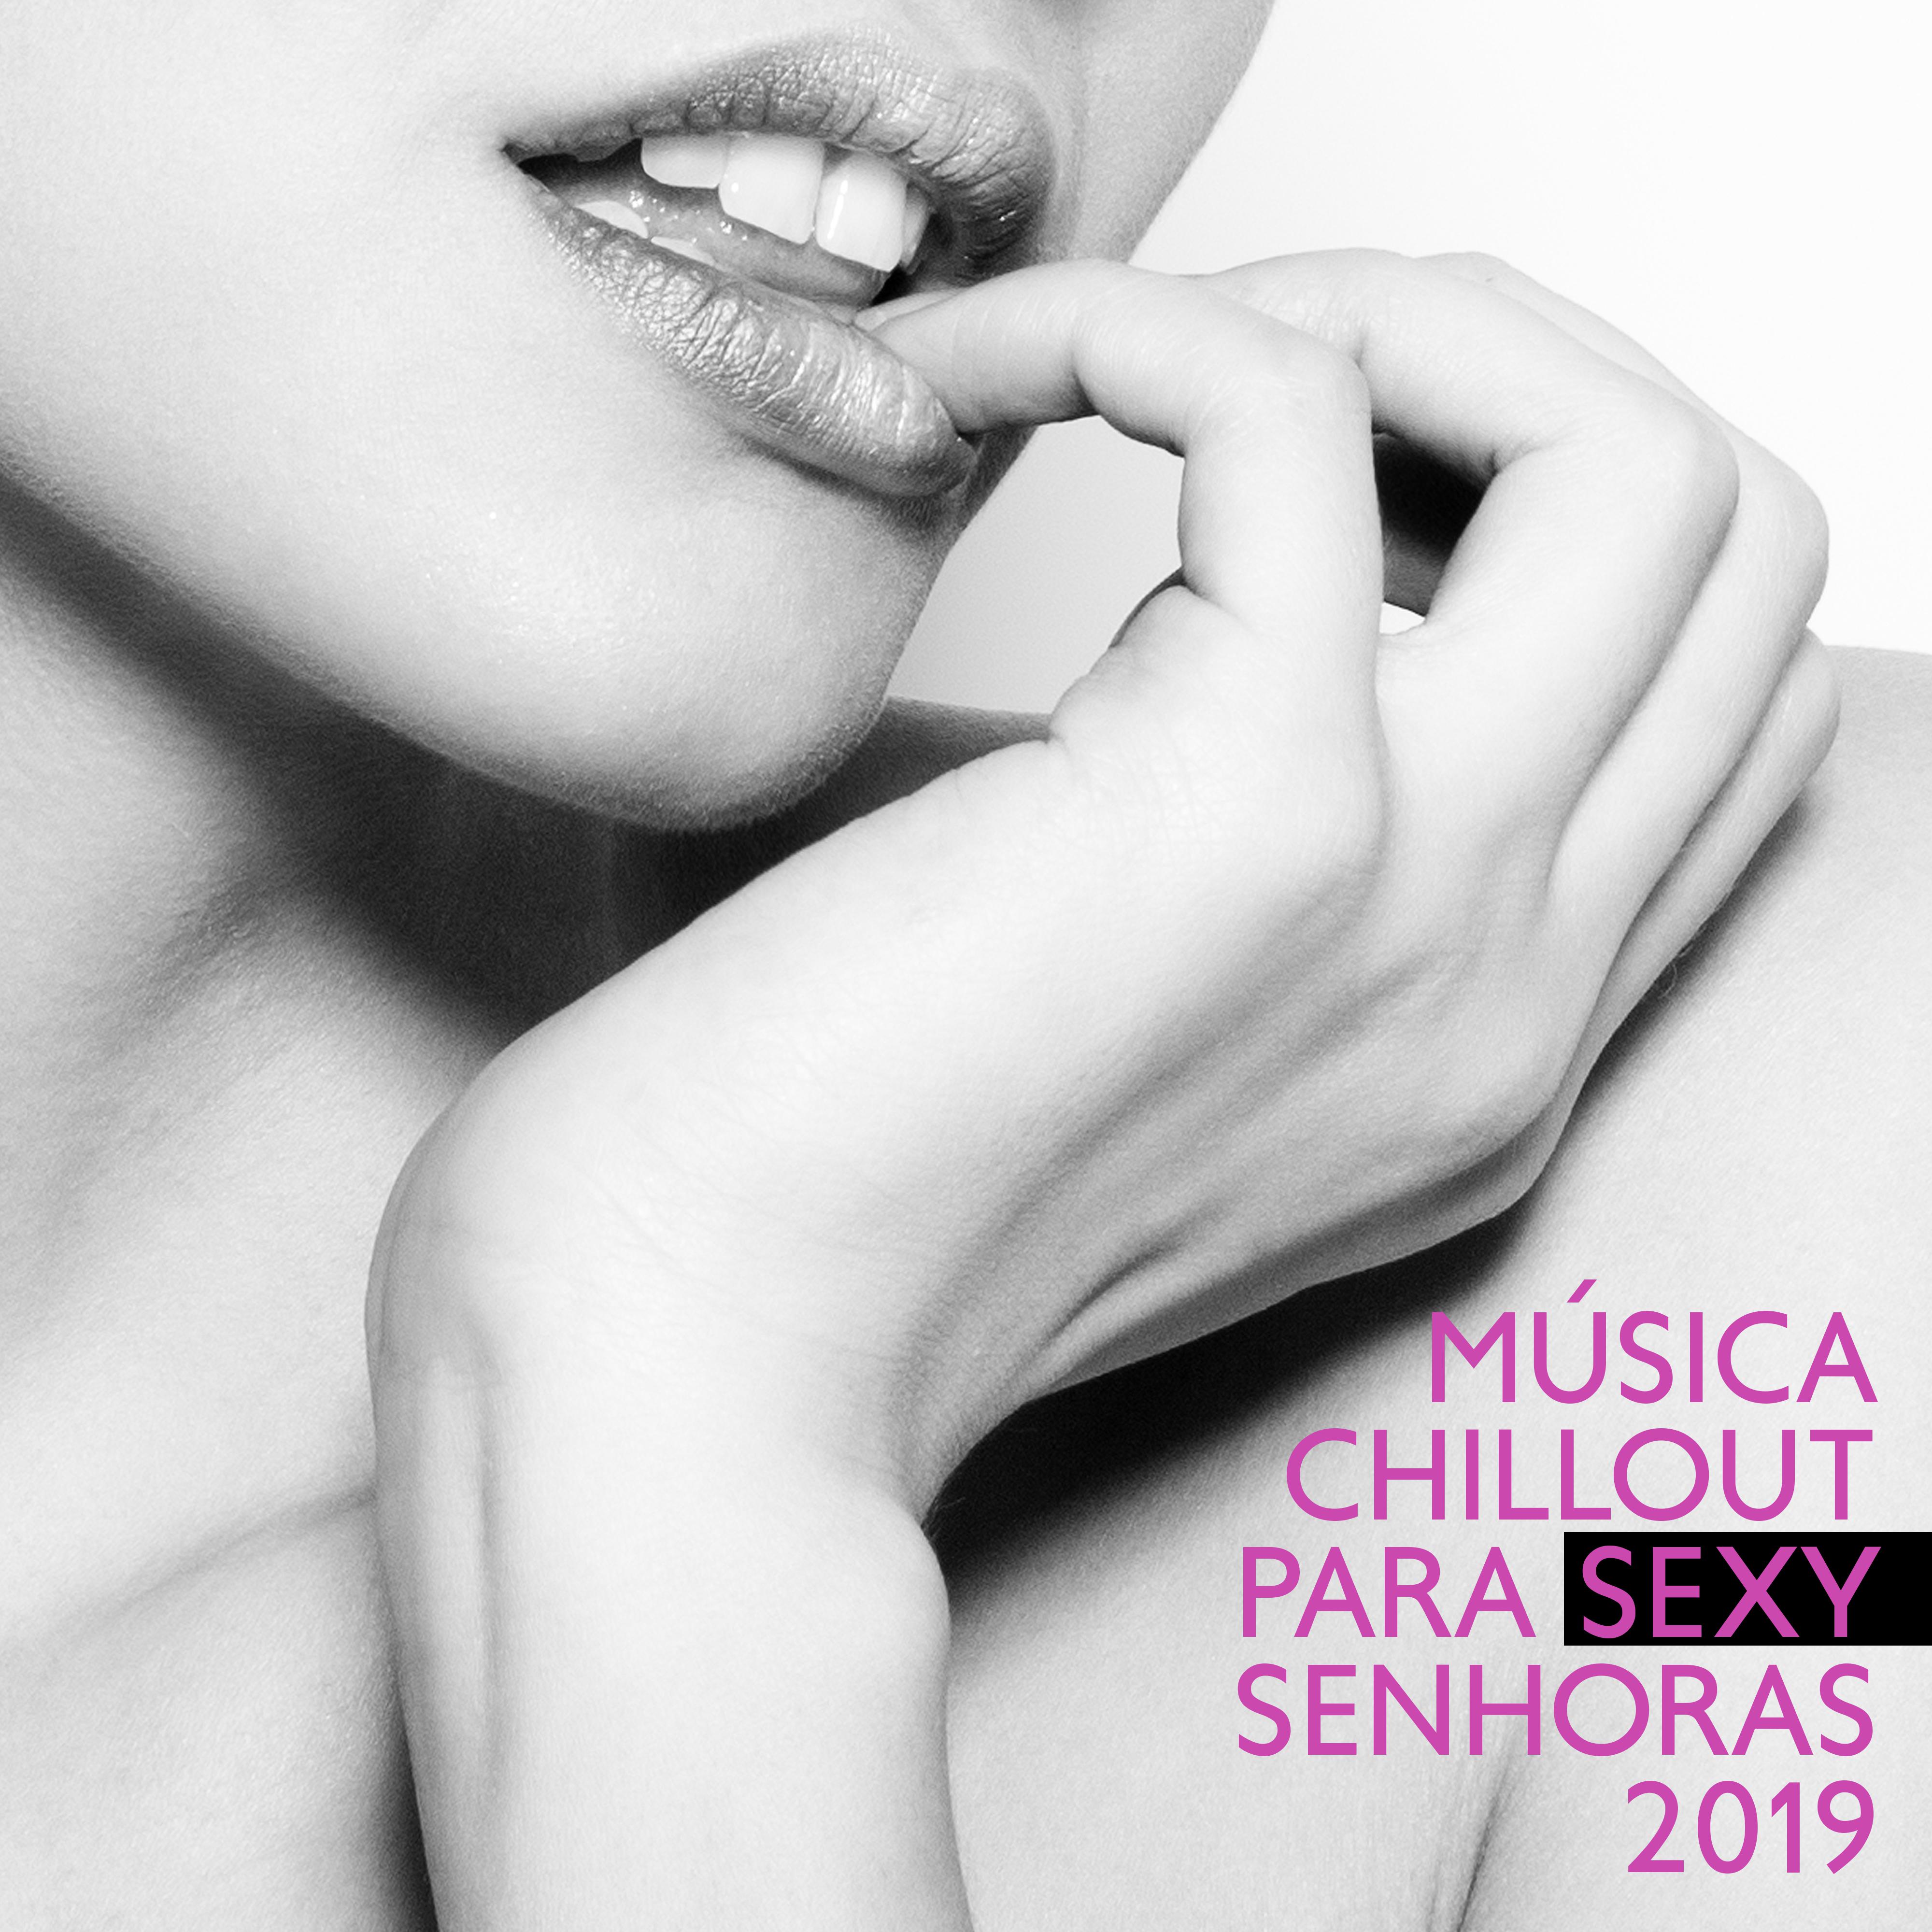 Música Chillout para Sexy Senhoras 2019